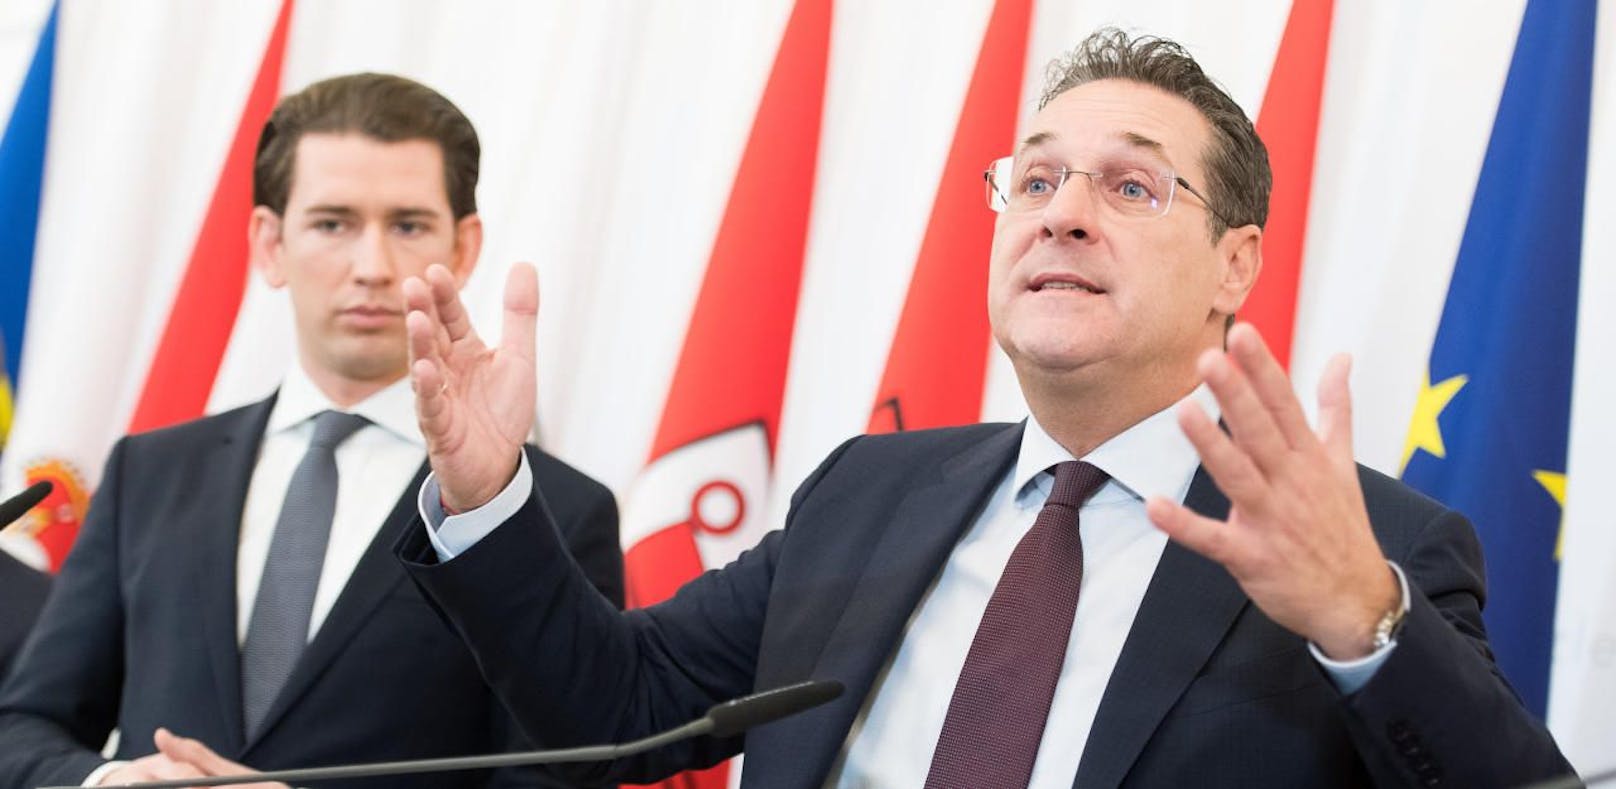 Bundeskanzler Sebastian Kurz (ÖVP) und Vizekanzler Heinz-Christian Strache (FPÖ)